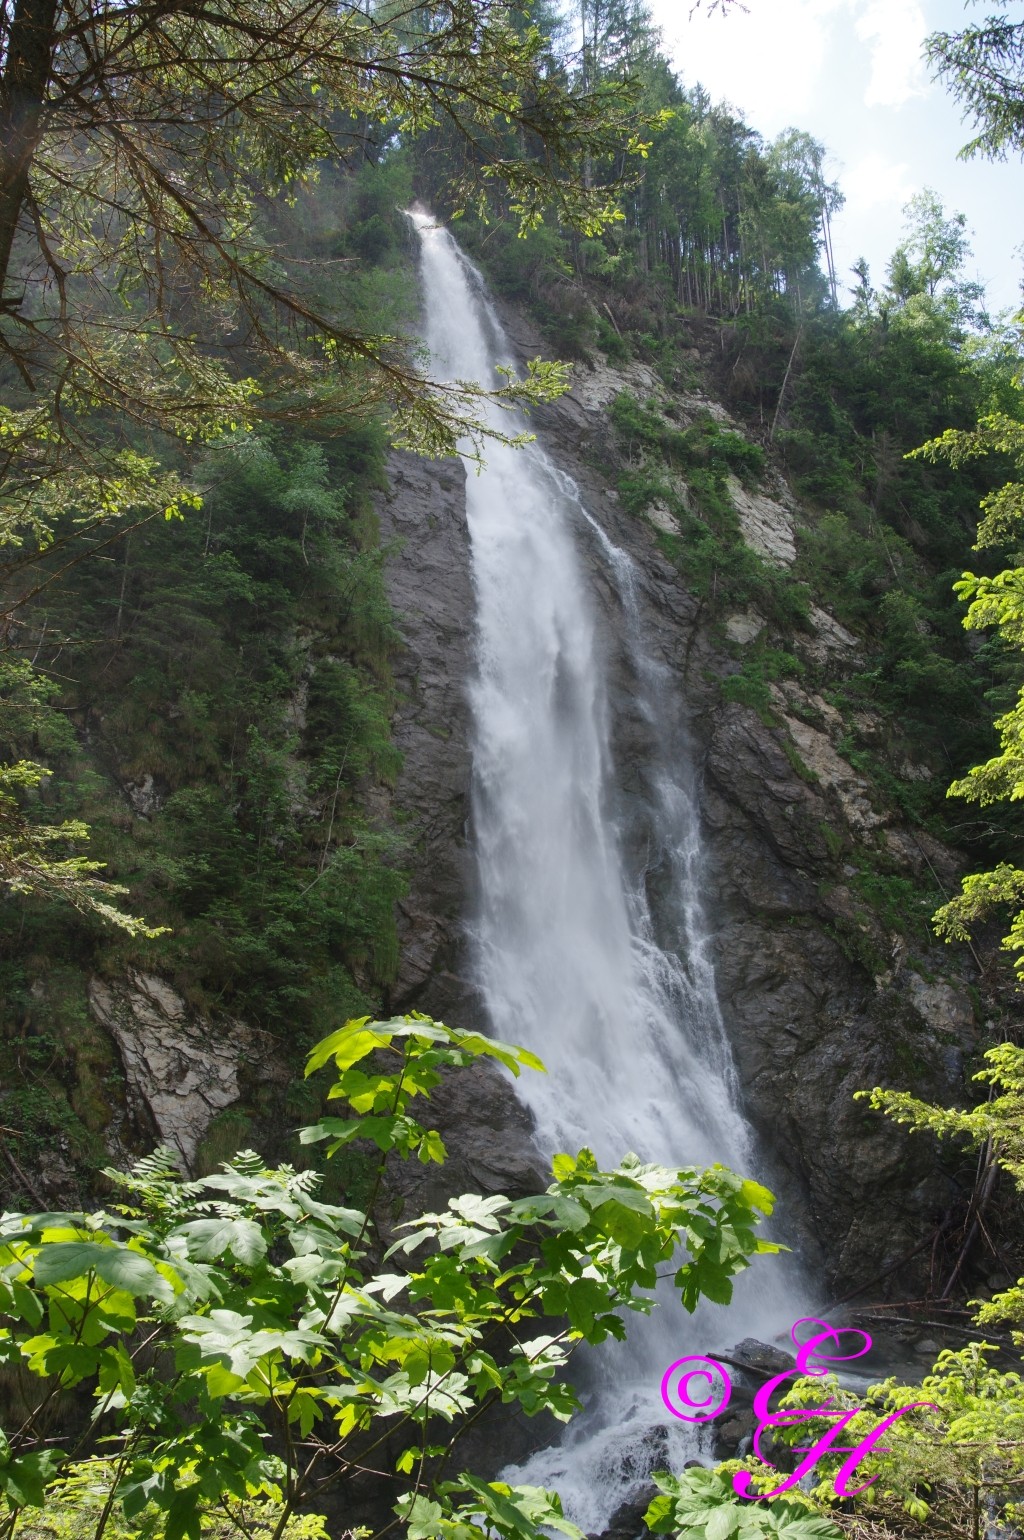 Beeindruckend stürzt der Wasserfall herunter